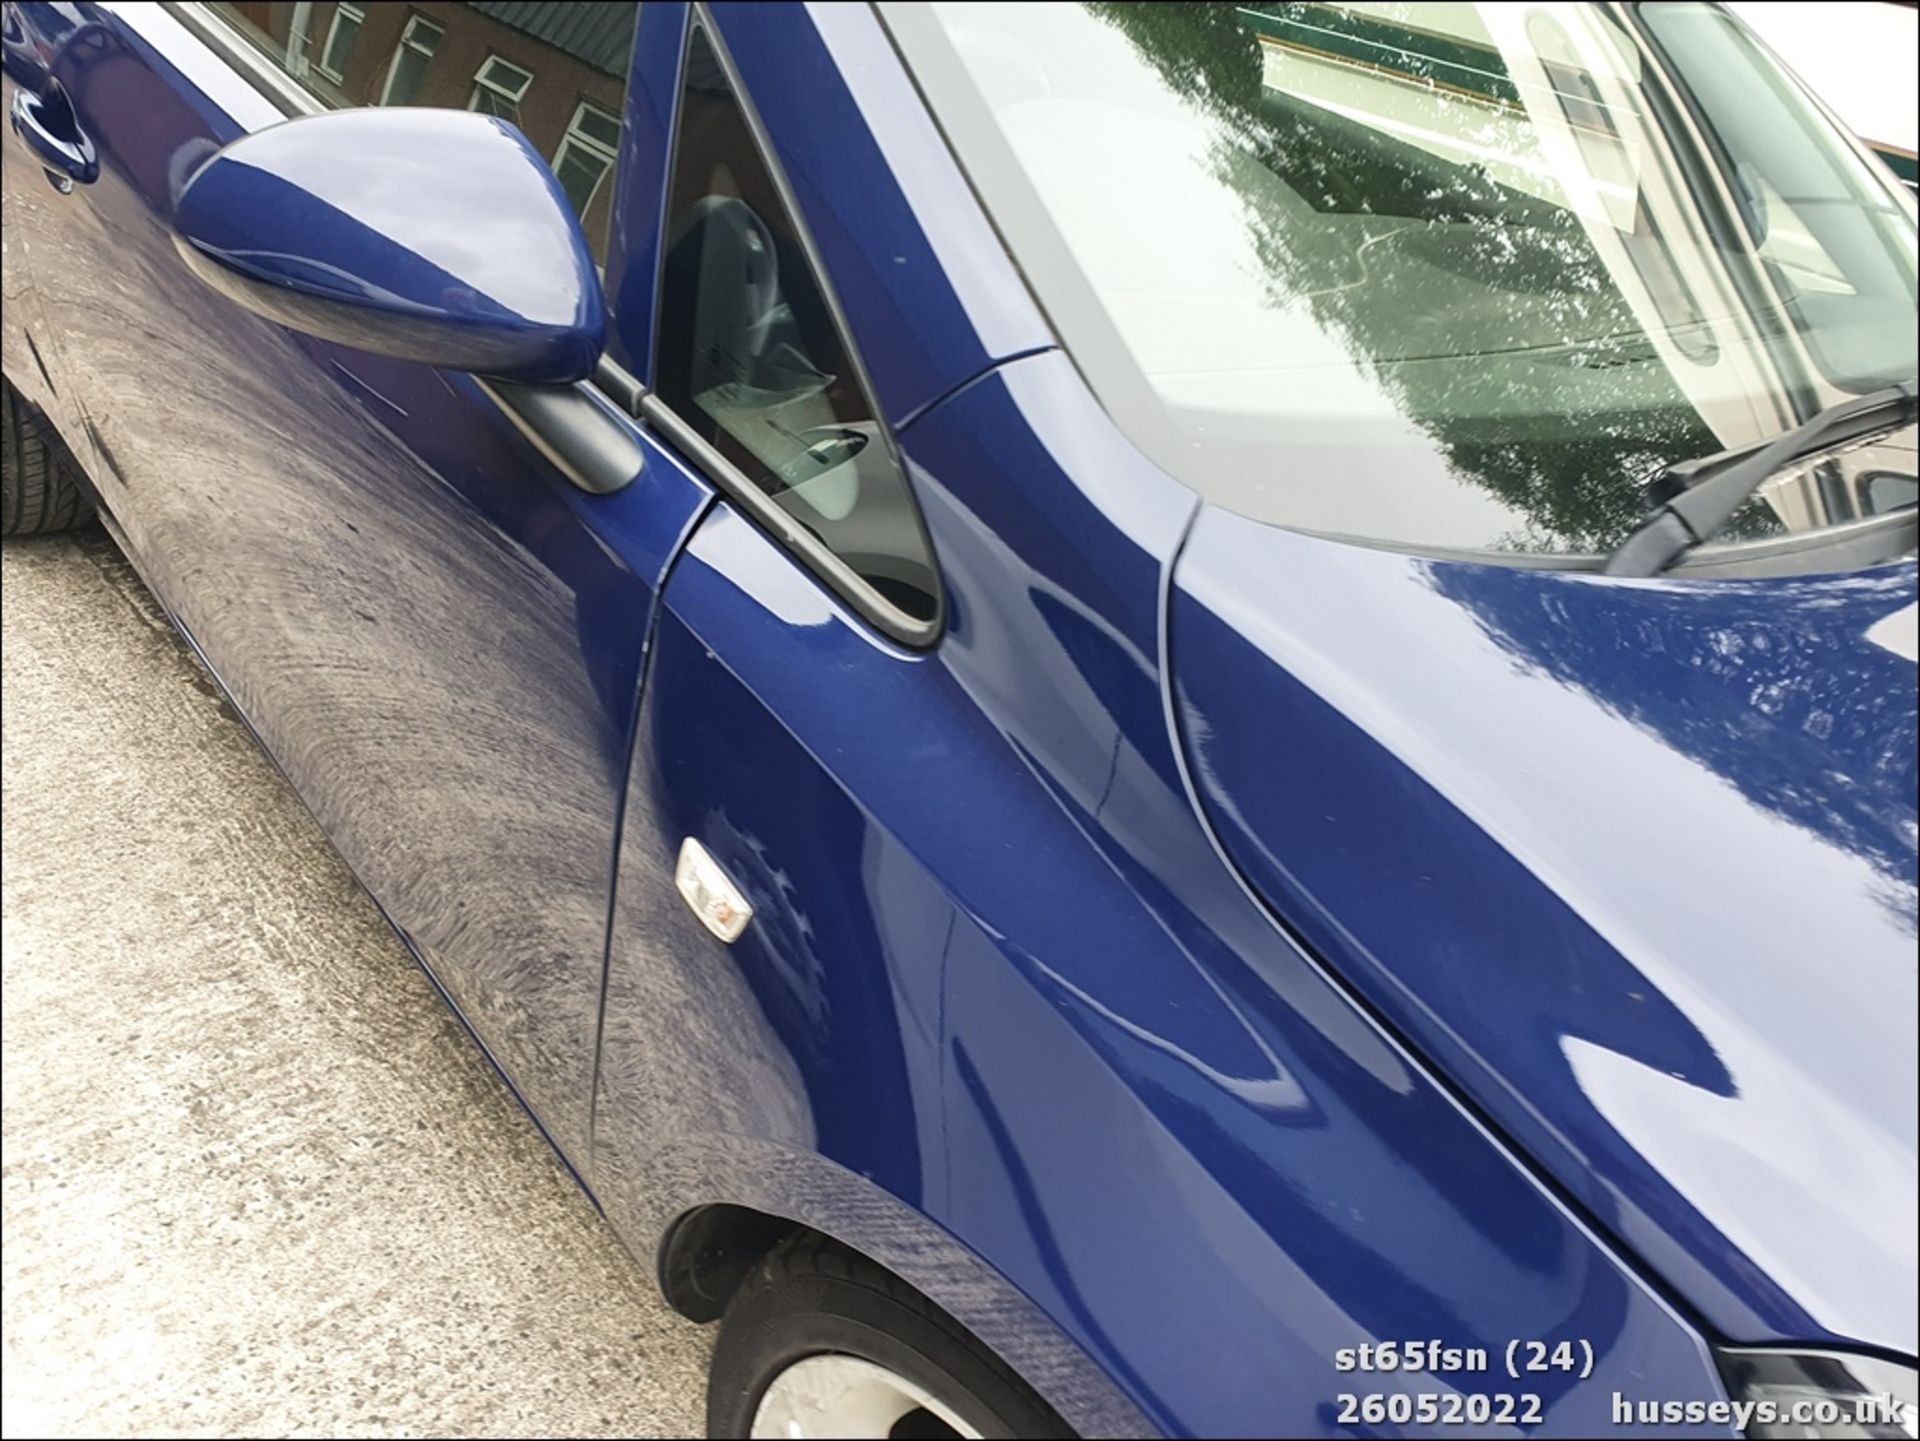 15/65 VAUXHALL CORSA DESIGN - 1229cc 3dr Hatchback (Blue, 39k) - Image 24 of 27